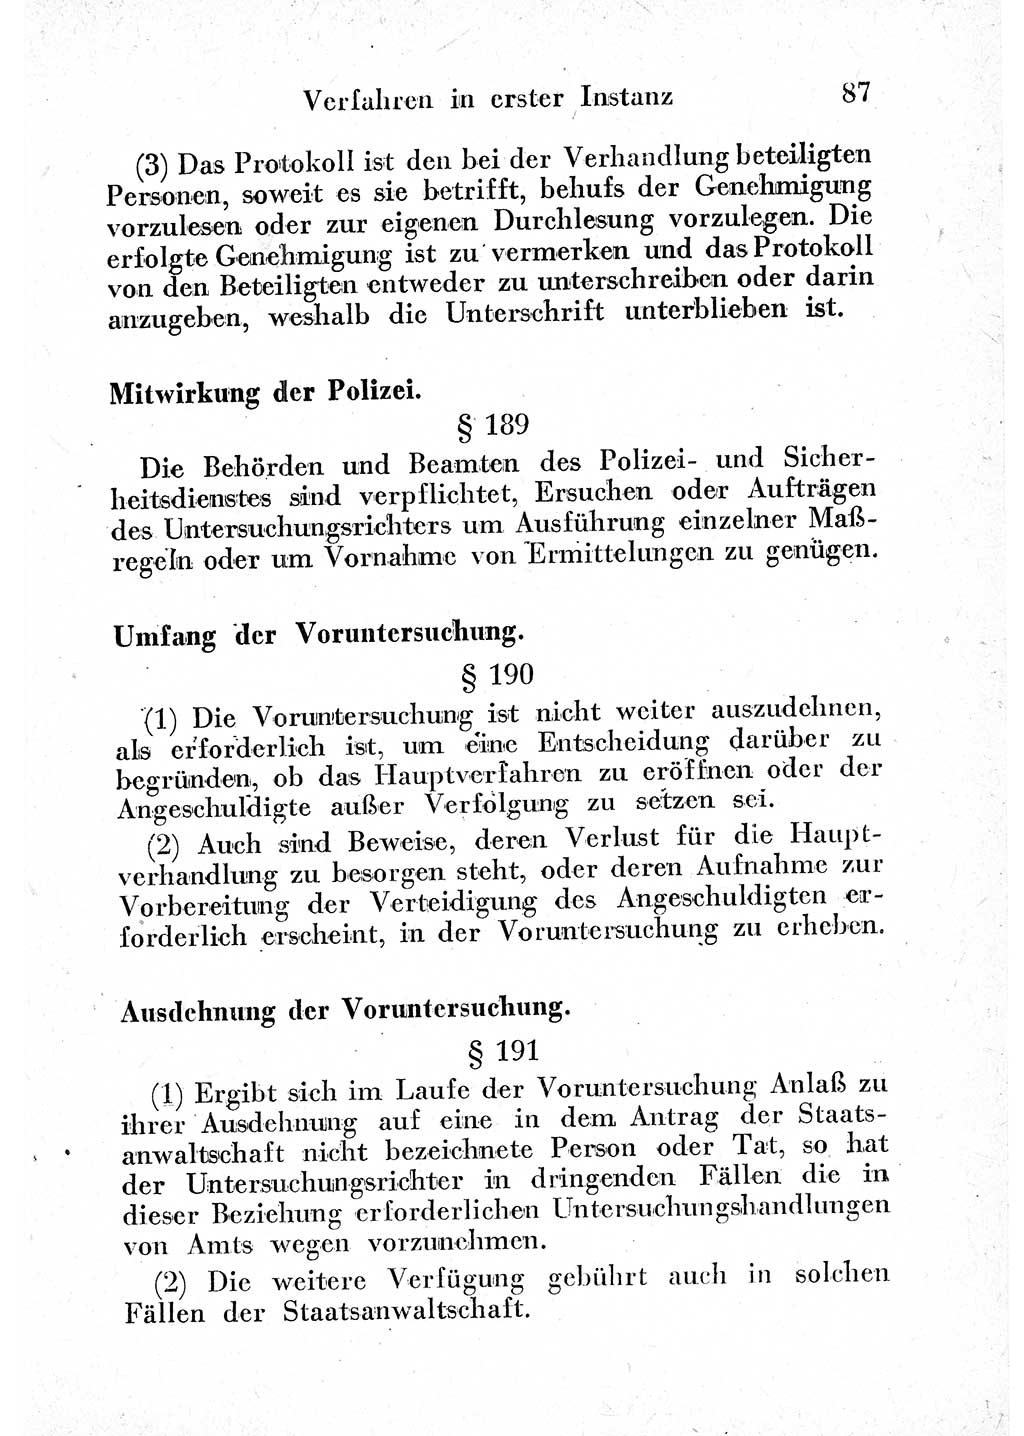 Strafprozeßordnung (StPO), Gerichtsverfassungsgesetz (GVG) und zahlreiche Nebengesetze der sowjetischen Besatzungszone (SBZ) in Deutschland 1949, Seite 87 (StPO GVG Ges. SBZ Dtl. 1949, S. 87)